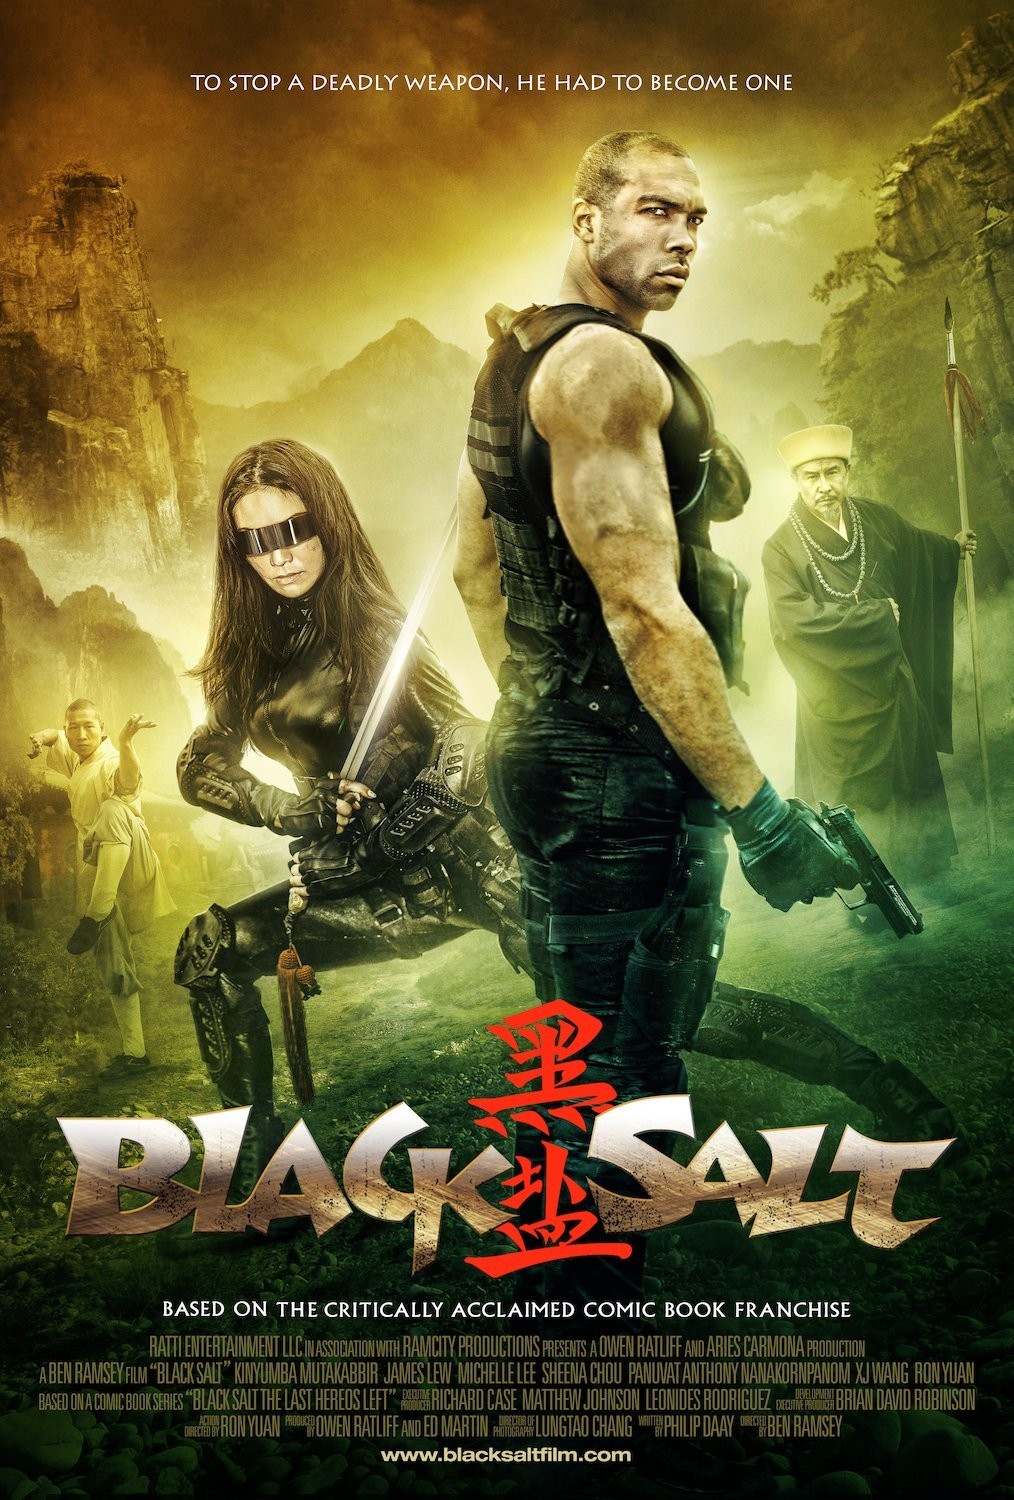 Extra Large Movie Poster Image for Black Salt